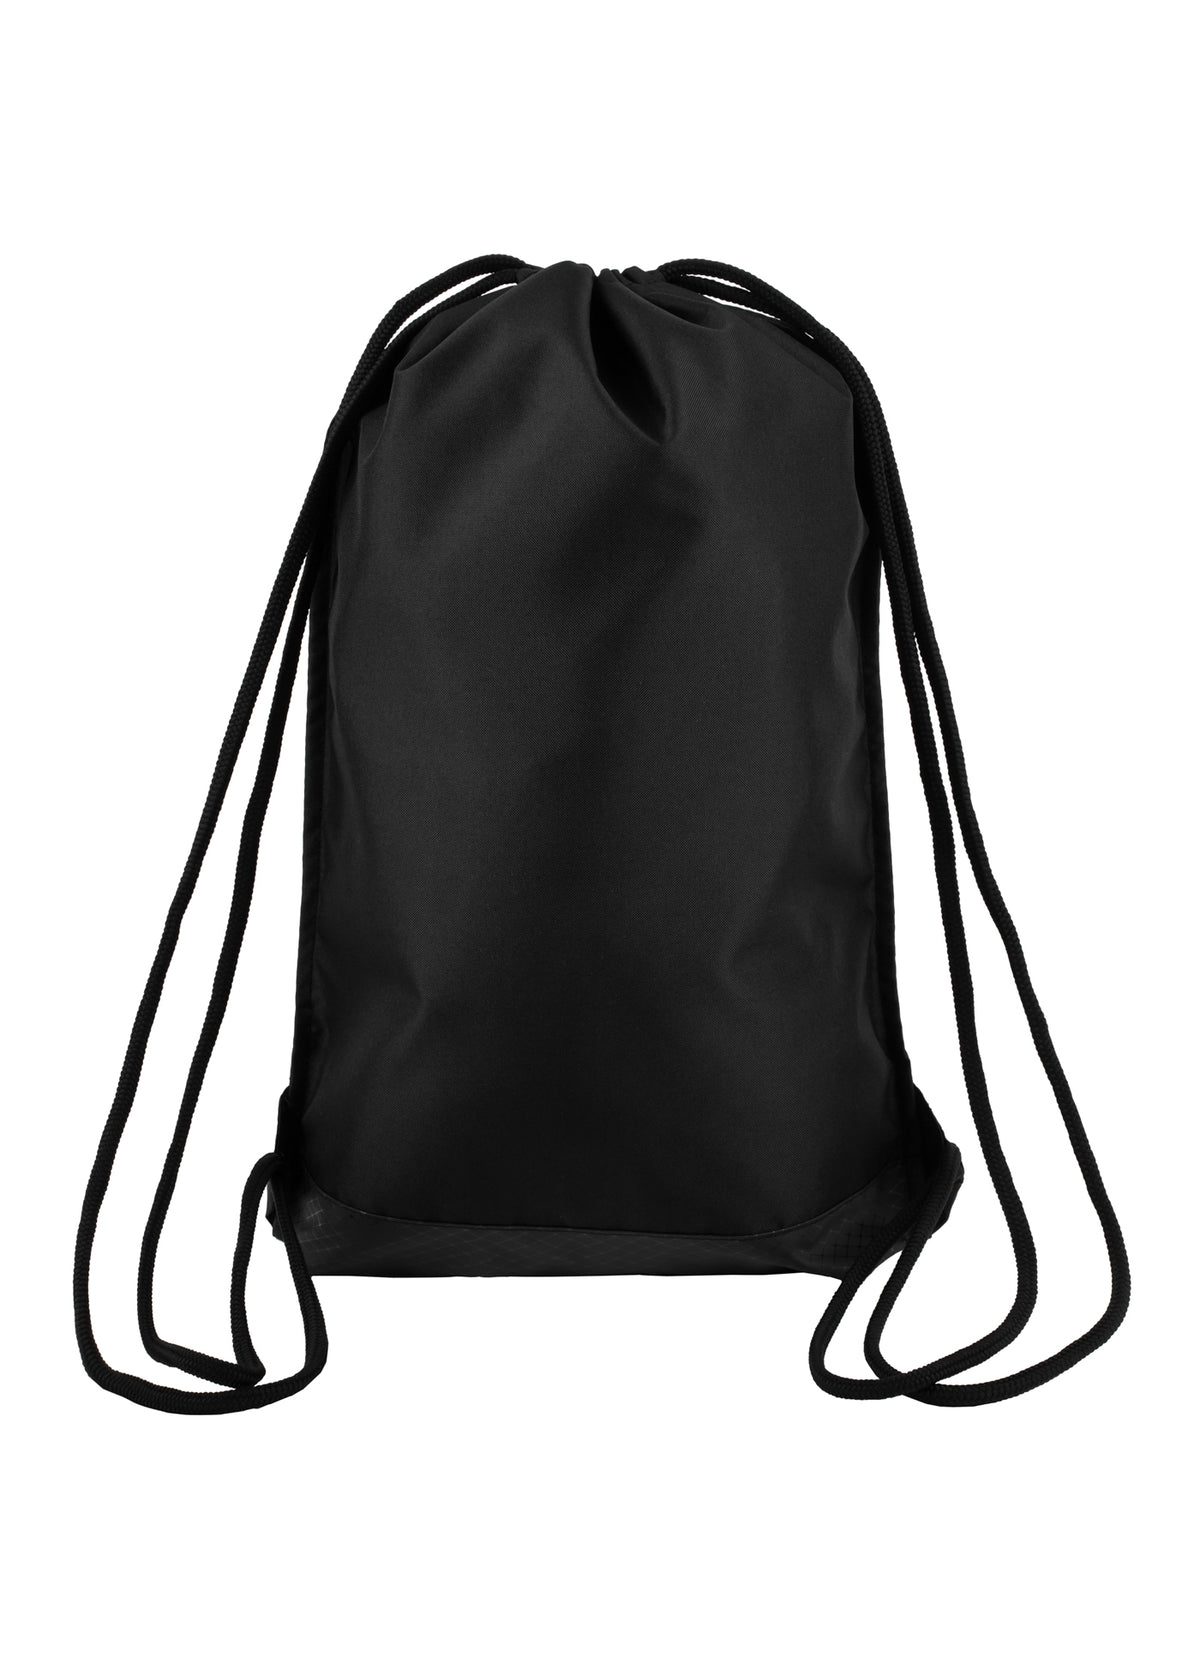 ADCC Gym Sack Bag